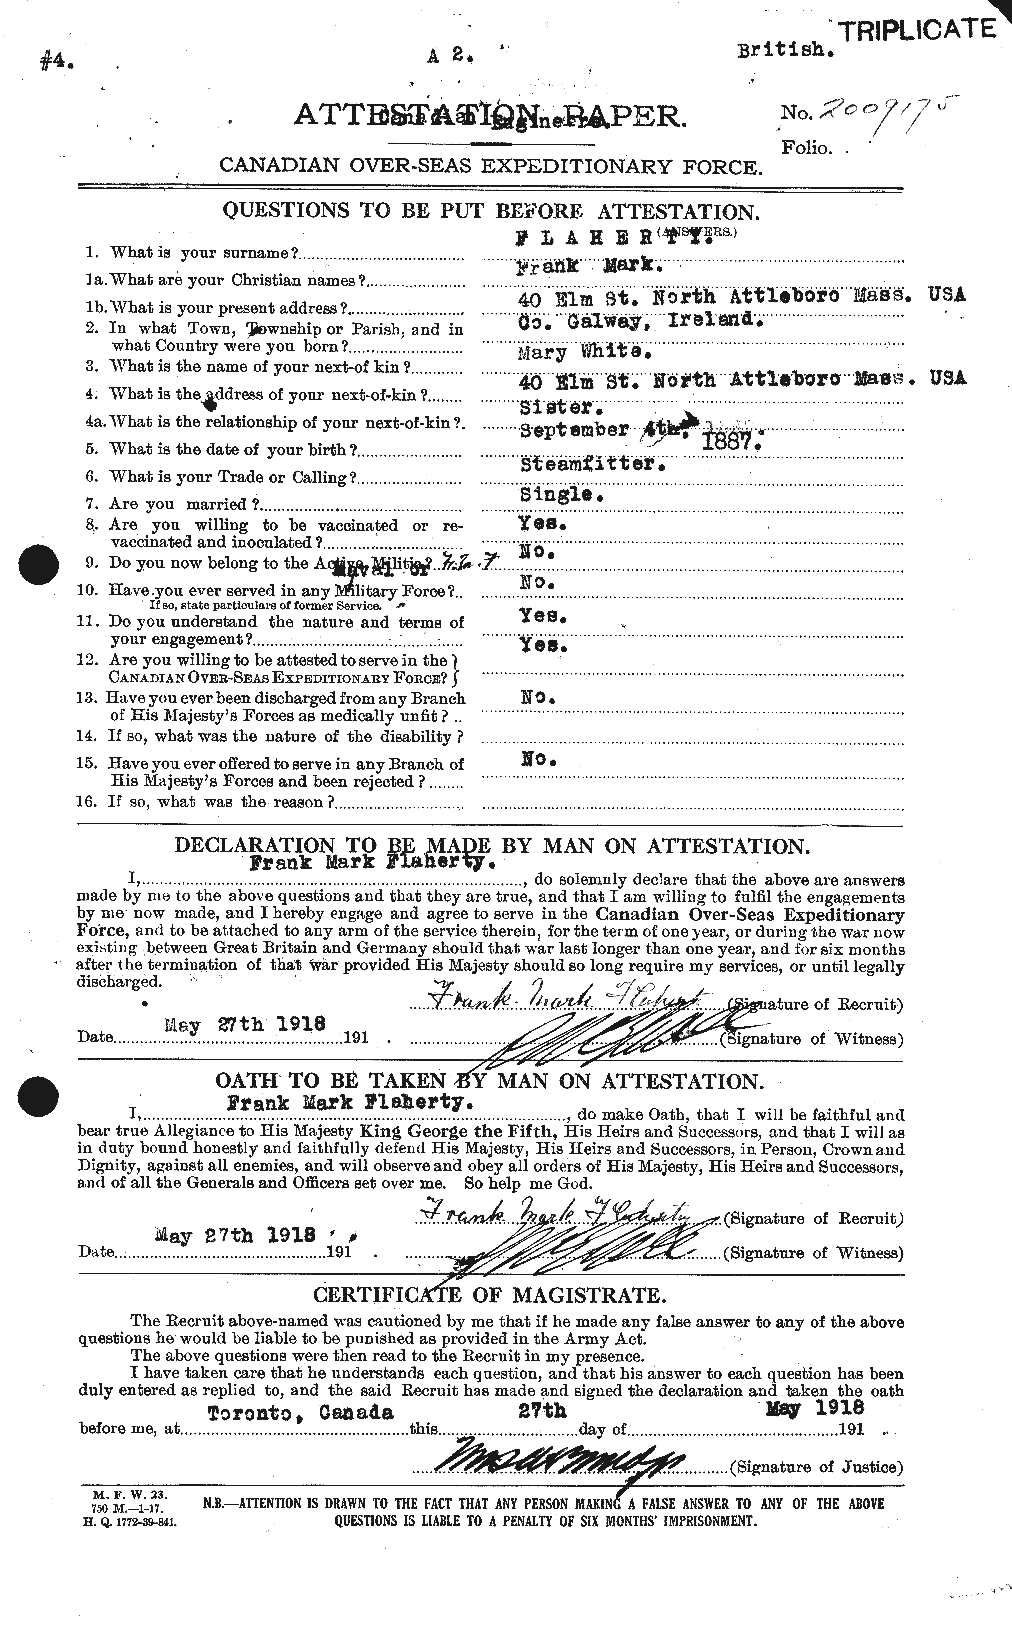 Dossiers du Personnel de la Première Guerre mondiale - CEC 323355a